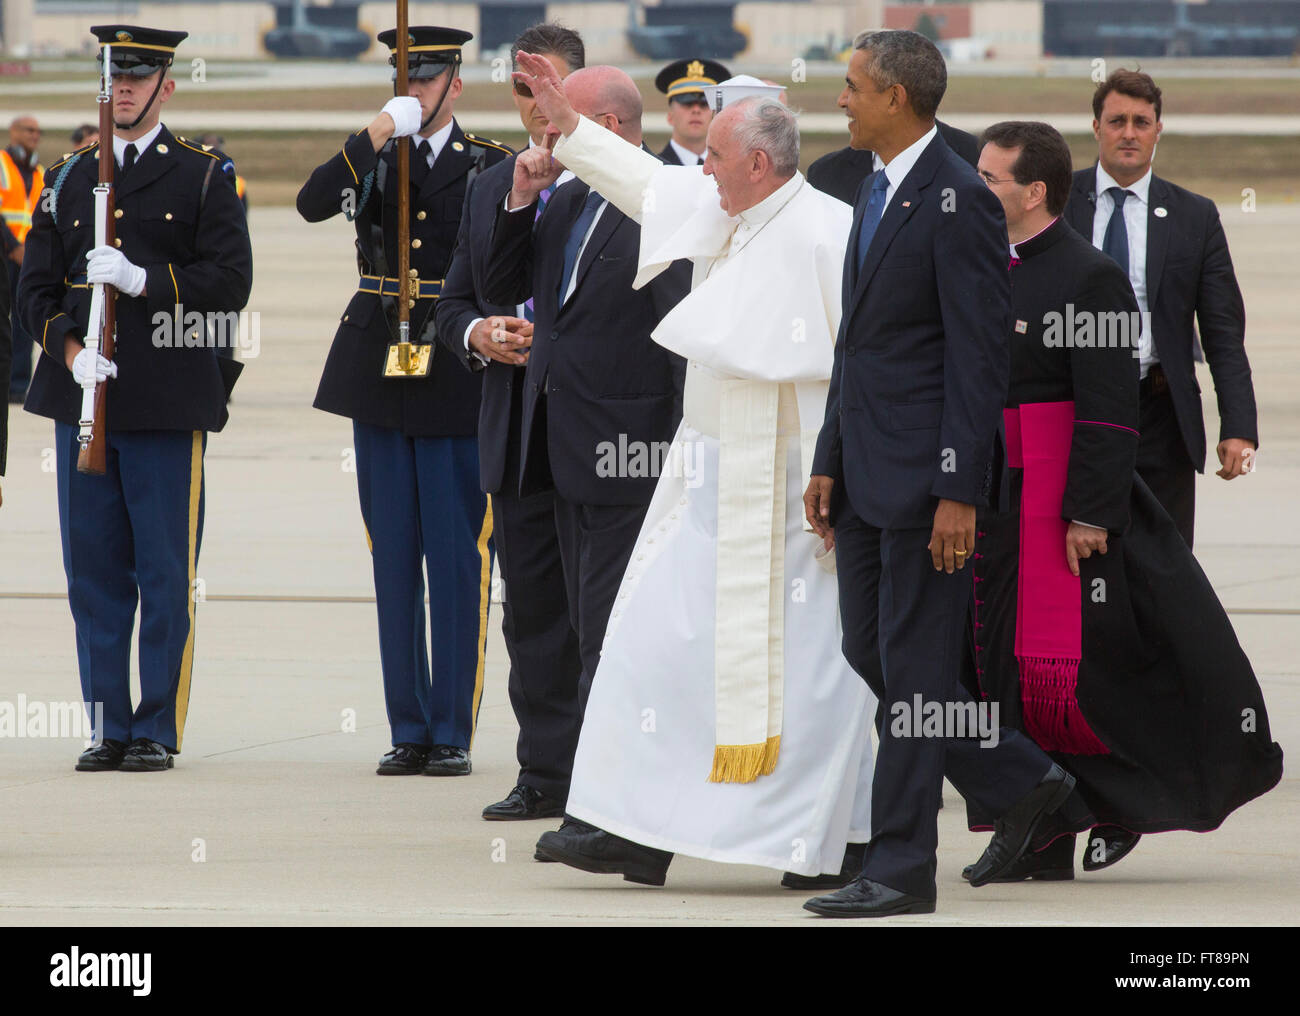 Le Pape arrive à Joint Base Andrews près de Washington D.C. et les vagues d'étudiants locaux avec le président Obama, alors qu'il commence sa tournée de trois villes des États-Unis. Photo de James Tourtellotte. Banque D'Images